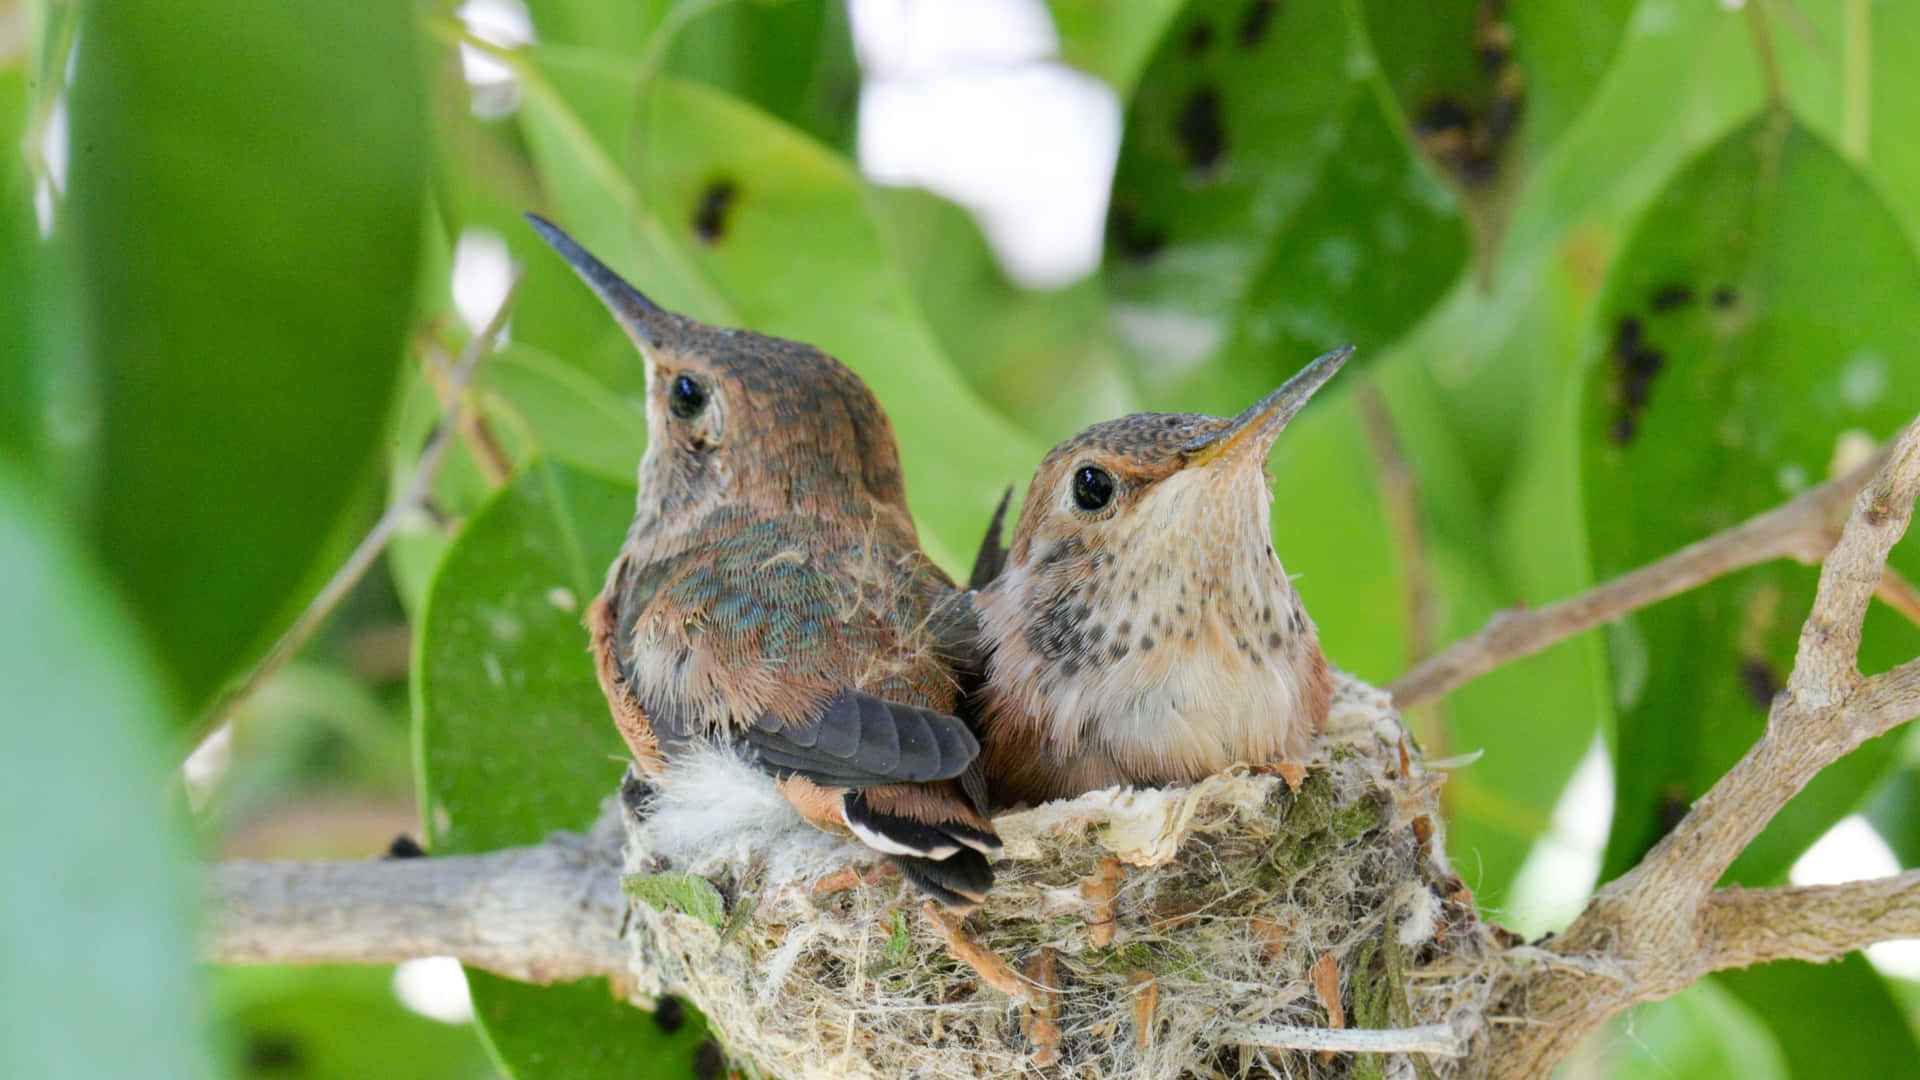 An intricately built Hummingbird Nest on a branch